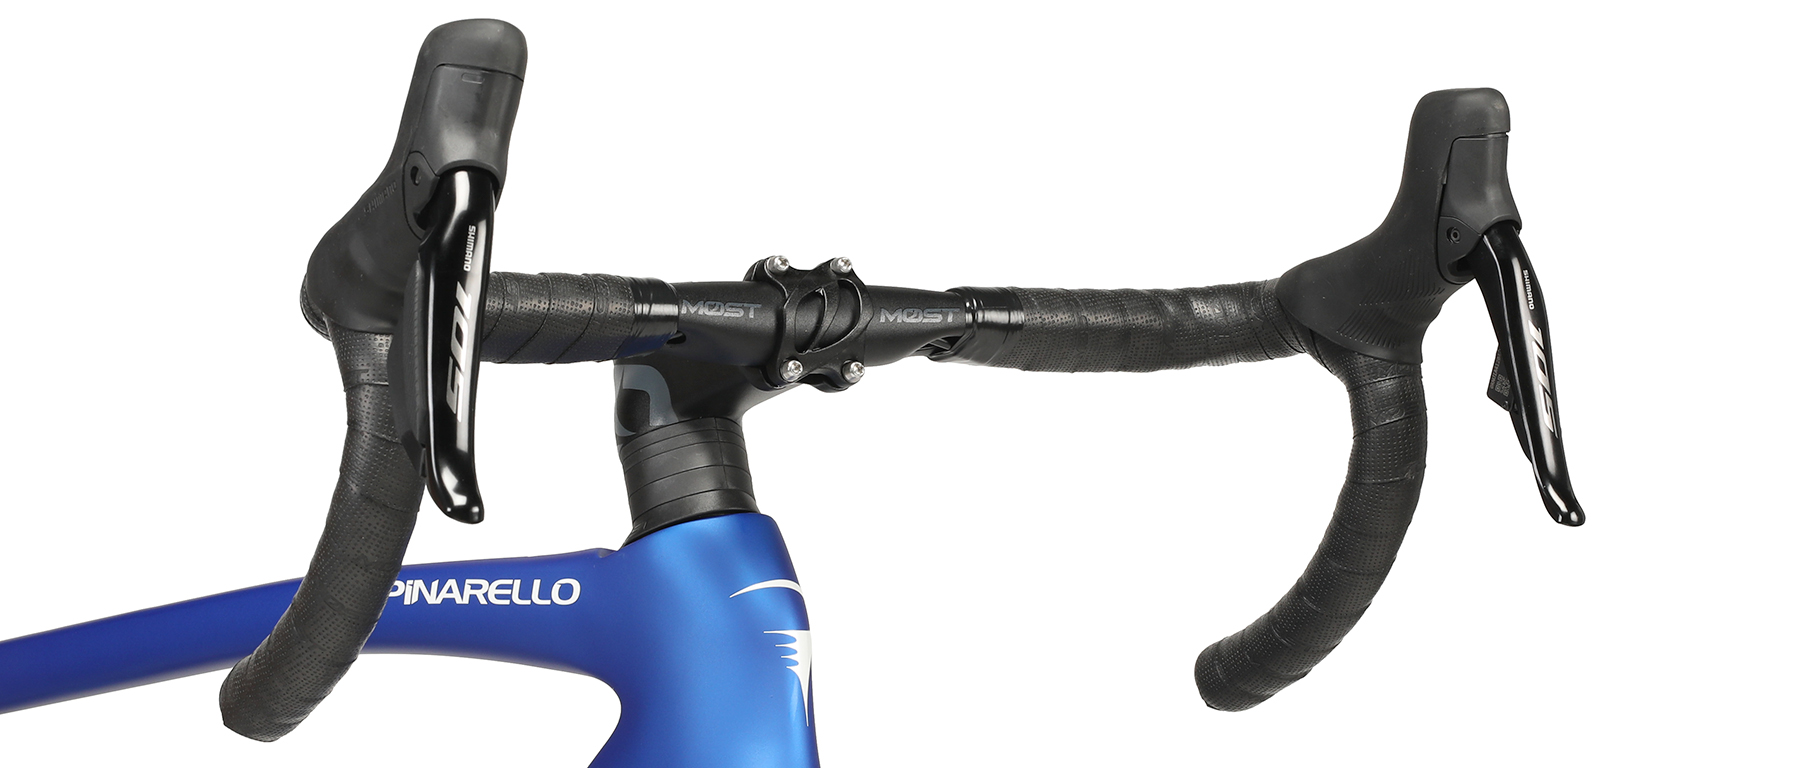 Pinarello F5 105 Di2 R7170 Bicycle